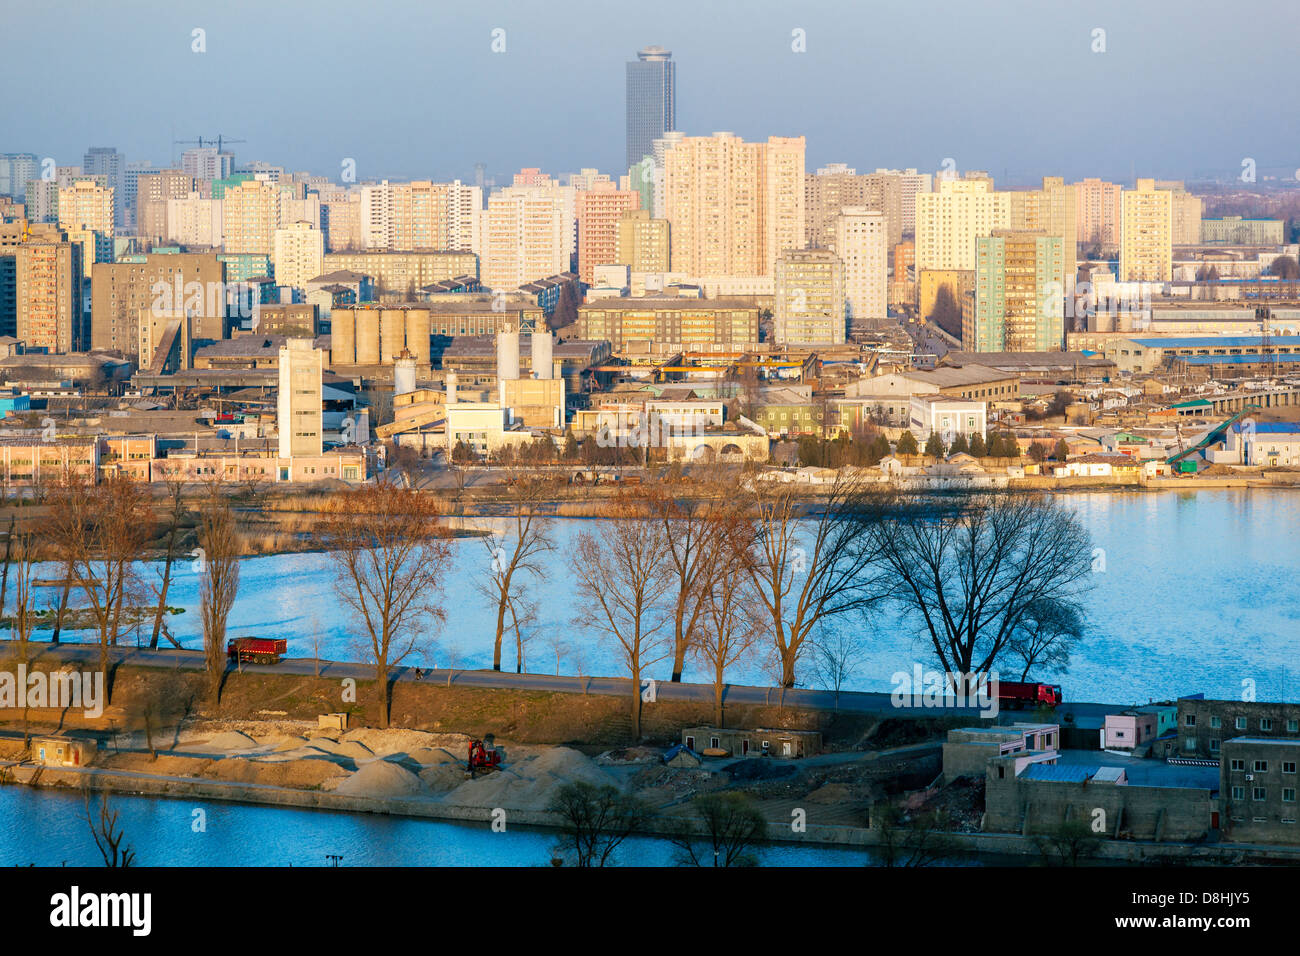 Peuples démocratique République populaire démocratique de Corée (RPDC), la Corée du Nord, Pyongyang, augmentation de la vue sur les toits de la ville Banque D'Images